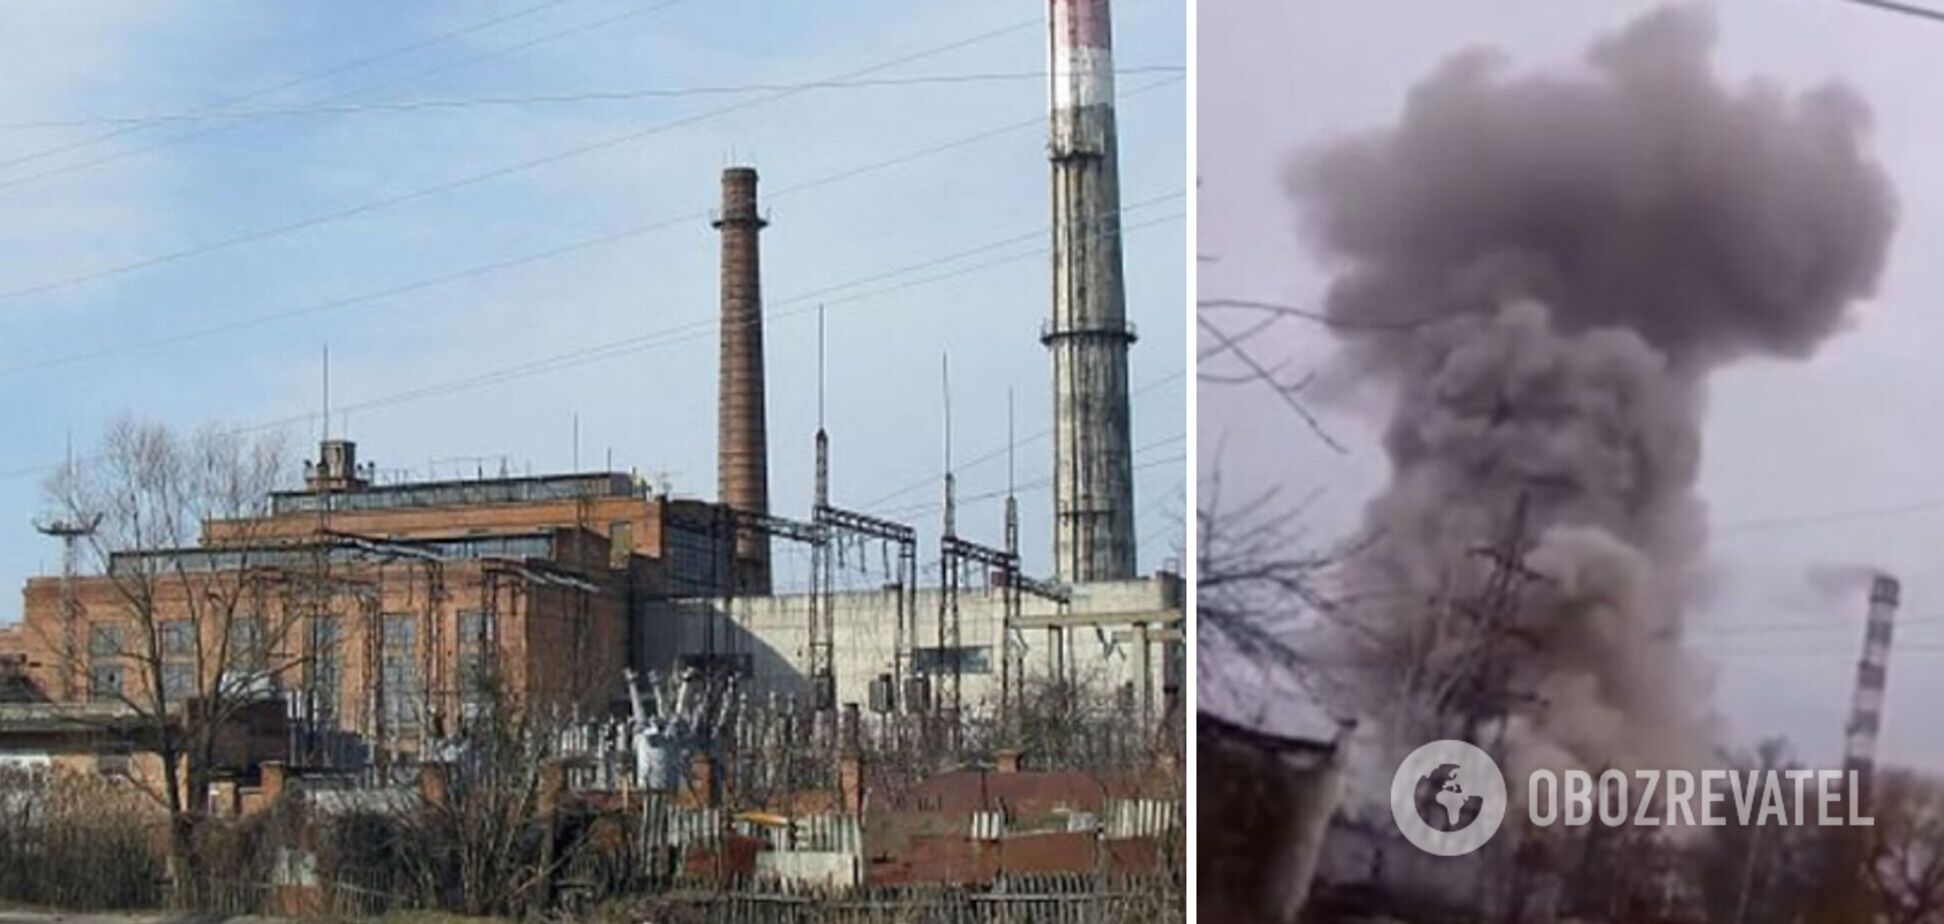 Российские оккупанты разбомбили ТЭЦ в Ахтырке, есть погибшие. Видео